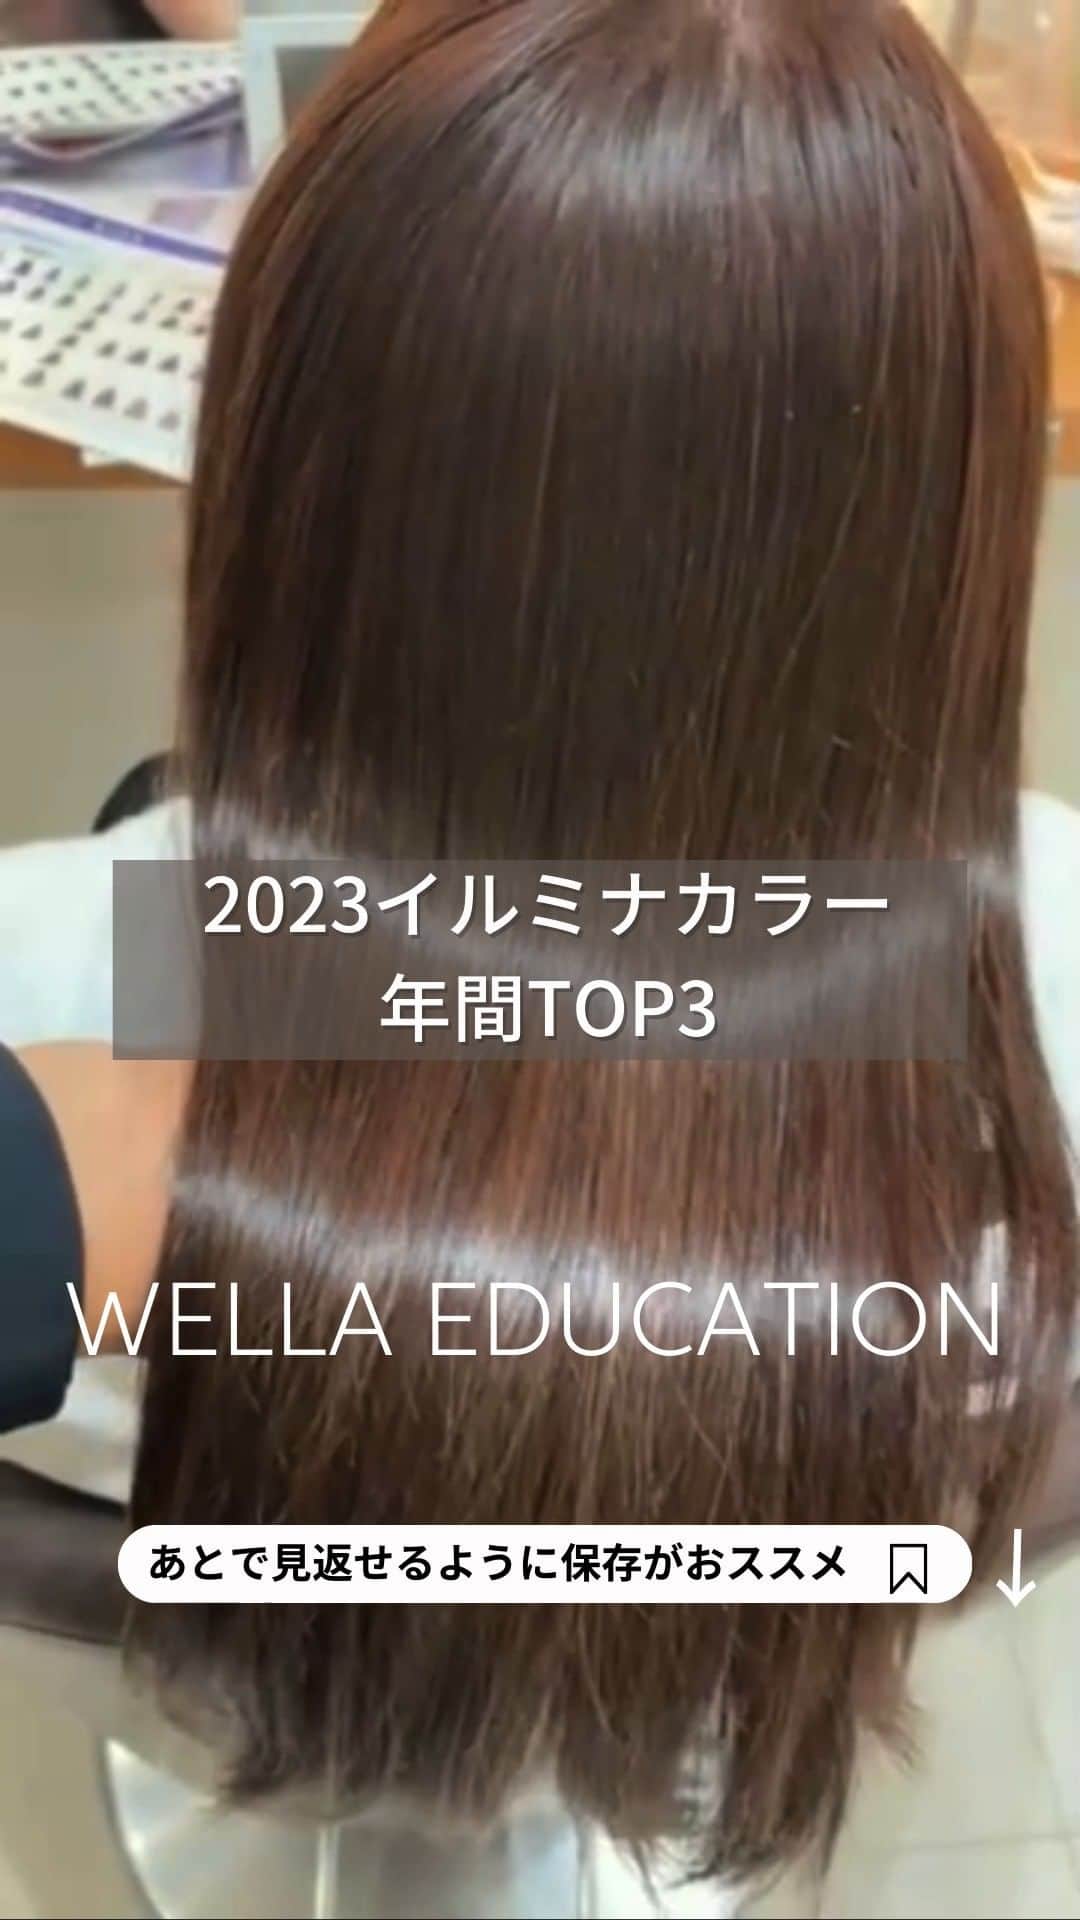 Wella Professionals Japanのインスタグラム：「【2023年イルミナカラー年間ランキングTOP3】先日、YouTubeチャンネル『カラーラボch』では、TOP５をご紹介しましたが、TOP3の色を改めて、毛束で見てみたいと思います 👍 ‼️   ーーーーーーーーーーーーーーーーーーー  【第1位　サファリ】 昨年に引き続き第1位 ‼️ まだまだ続きそうなベージュ人気をけん引するサファリ ✨ 残念ながら写真ではなかなか伝わりにくいですが、ほんのりベースのバイオレットを感じる他では作れない絶妙なシアーベージュがこれ1本で表現出来ます 👌   【第2位　オーシャン】 やはり、硬く重く見えやすい髪にはブルーが必要ということで、こちらもランクイン 👍 オーシャンの青みは透明感のあるやわらかいアクアブルーで強すぎないので幅広くご使用いただけます 🙆‍♂️   【第3位　ヌード】 こちらも定番ではありますが、今年もランクイン 👏 イルミナの軸ともいえるソフトグレージュは単品でも、アレンジでも使いやすいのでオススメです ✨   ーーーーーーーーーーーーーーーーーーー   ～YouTube～  WELLA Professionals  カラーラボｃｈ【公式】   こちらのチャンネルではカラーにまつわる様々な情報をウエラトレーナーが検証などを交えながらお伝えしています。是非ご覧ください。   ーーーーーーーーーーーーーーーーーーー   #wella #wellahair #wellaprofessional #wellaeducation #ウエラ #ウエラトレーナー #イルミナカラー　#illumina #illuminacolor #ヘアカラー #イルミナカラーヌード #イルミナカラーオーシャン #イルミナカラーサファリ #YouTube #カラーラボch」